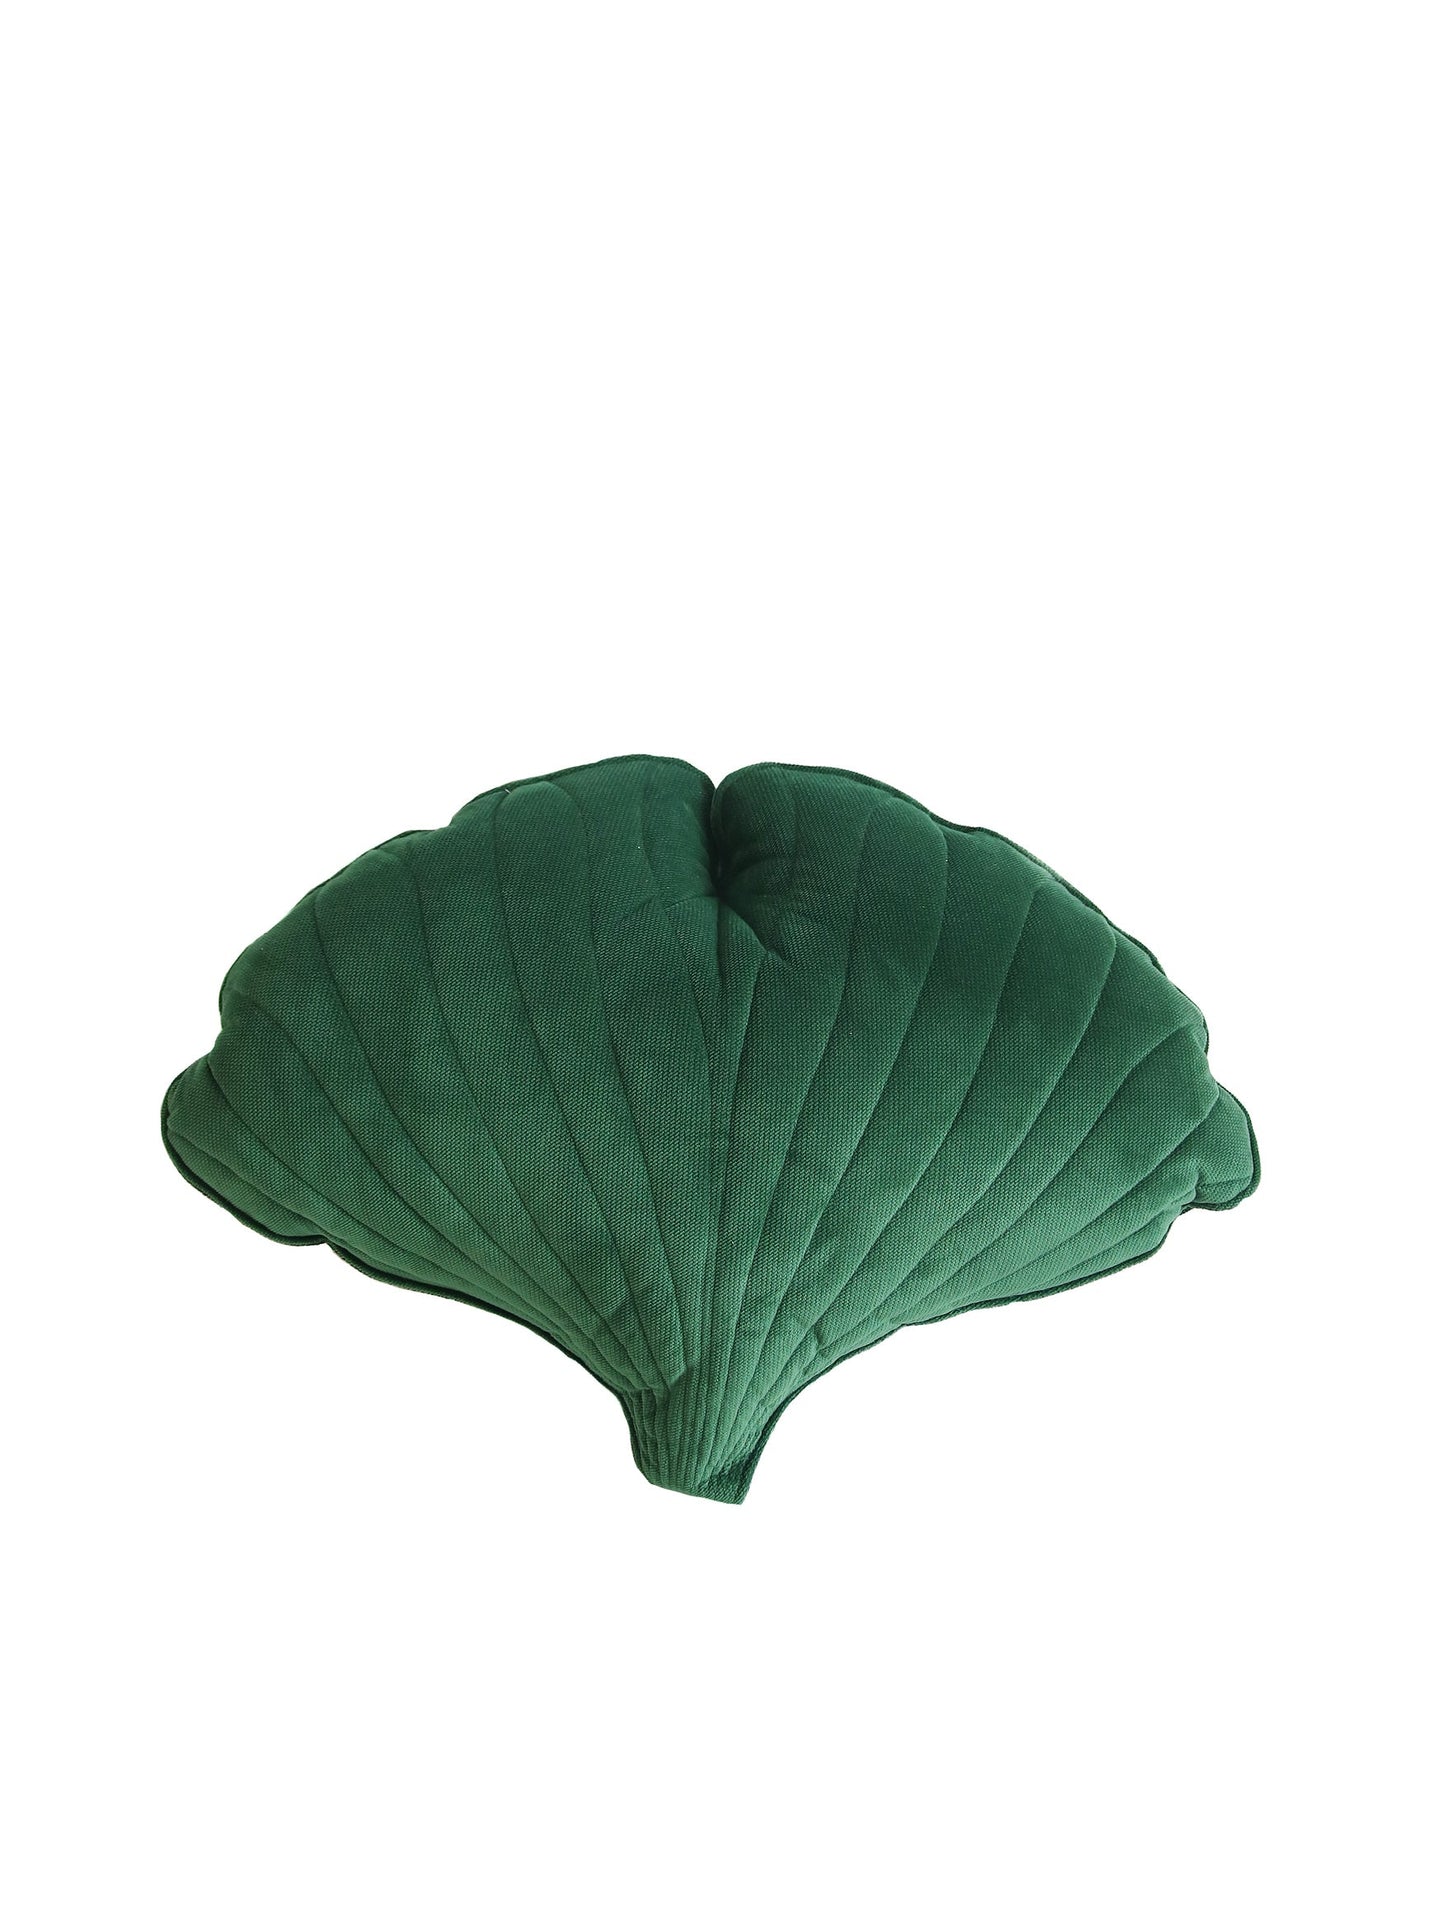 Velvet “Green” Ginkgo Leaf Pillow